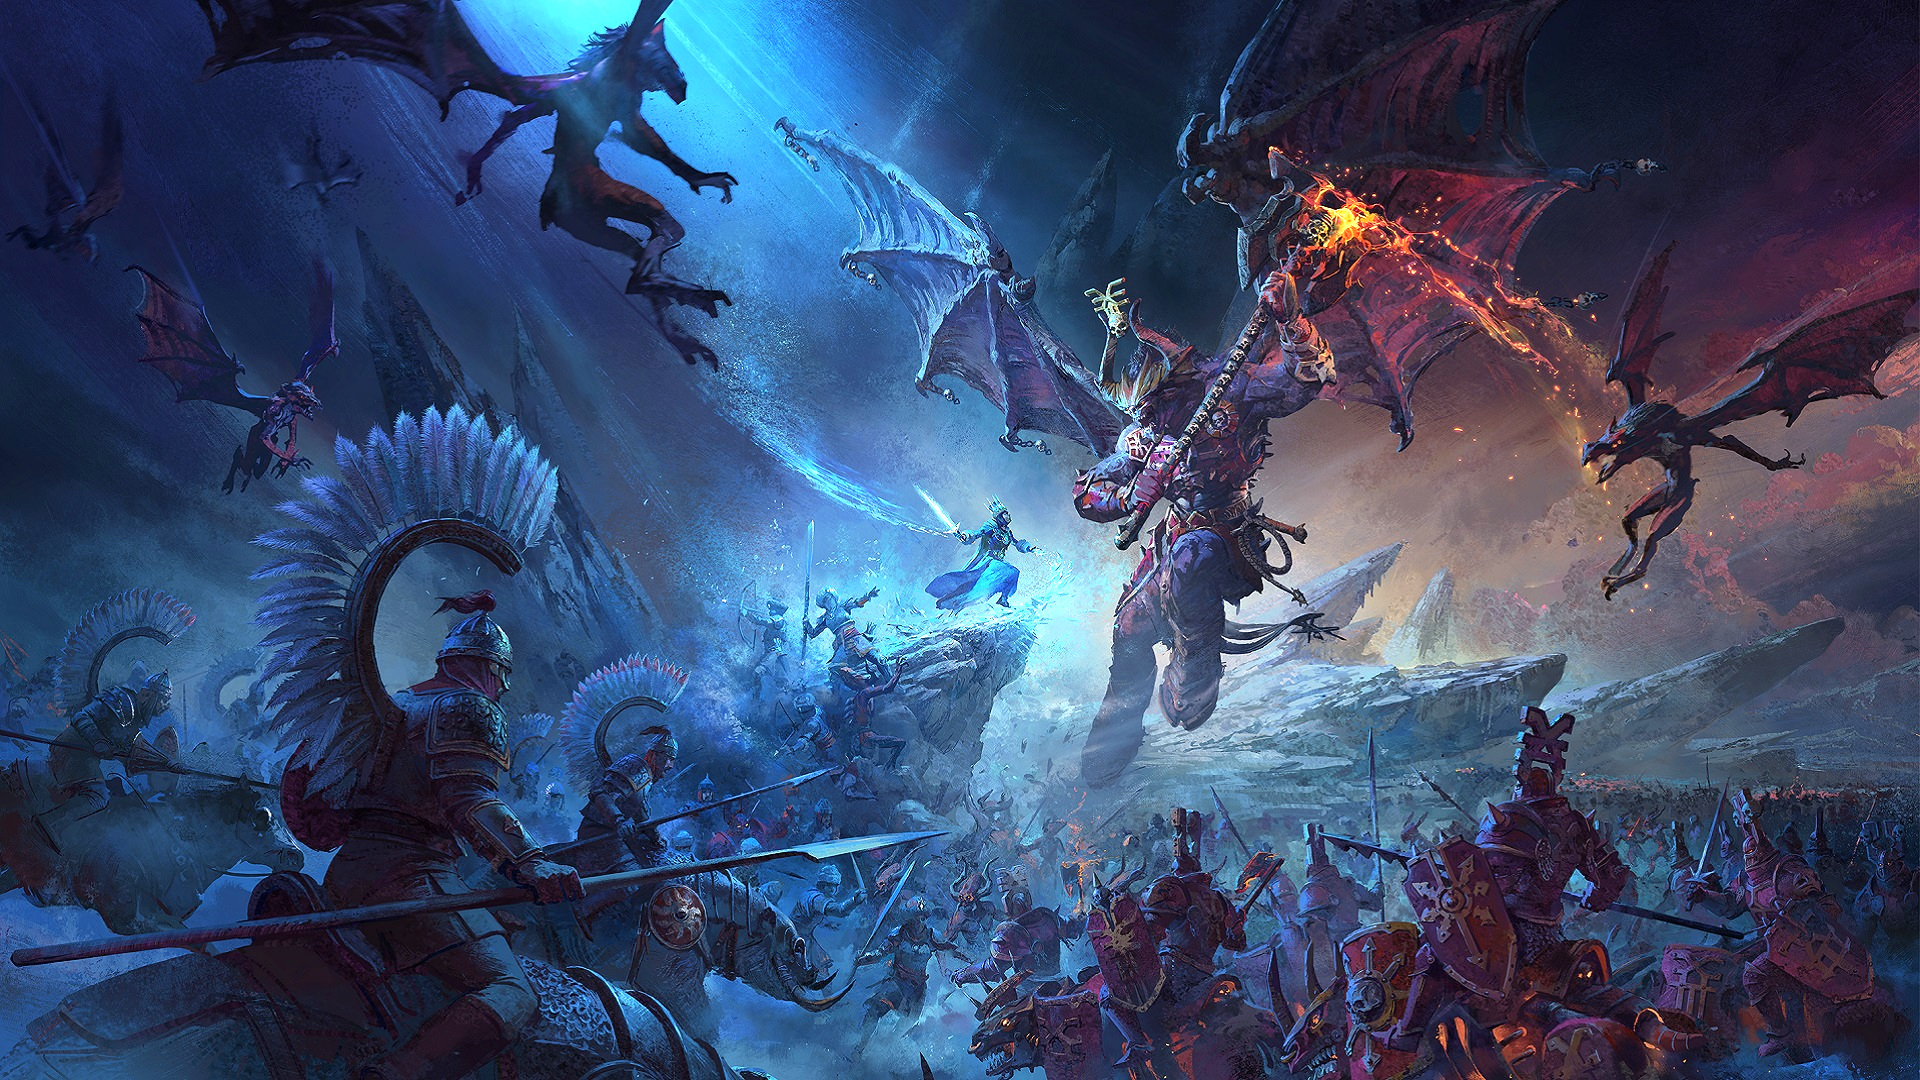 සම්පූර්ණ යුද්ධය: Warhammer 3 නිකුත් කරන දිනය සහ අප දන්නා අනෙක් සියල්ල